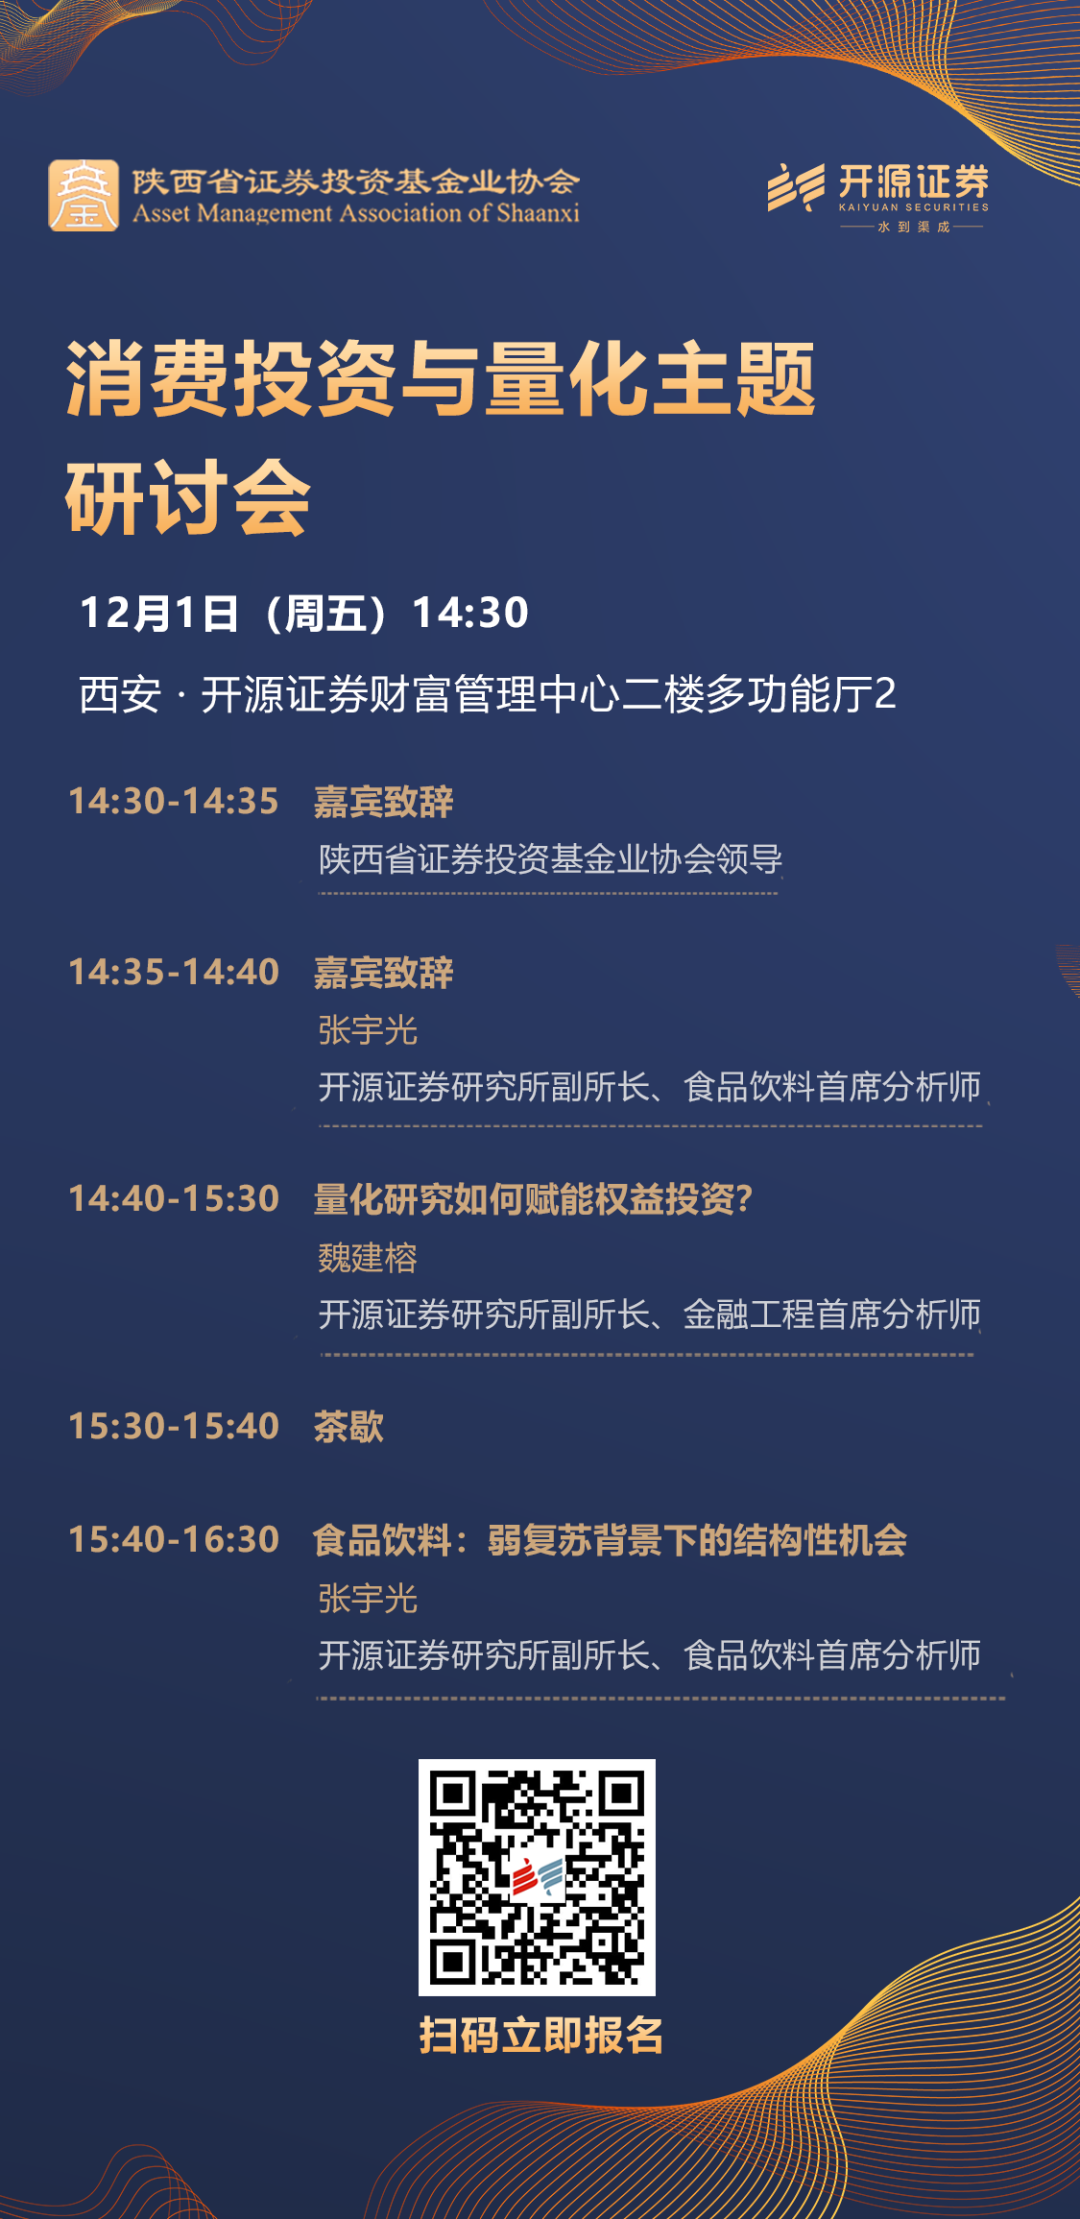 【邀请函】消费投资与量化主题研讨会(12月1日西安)